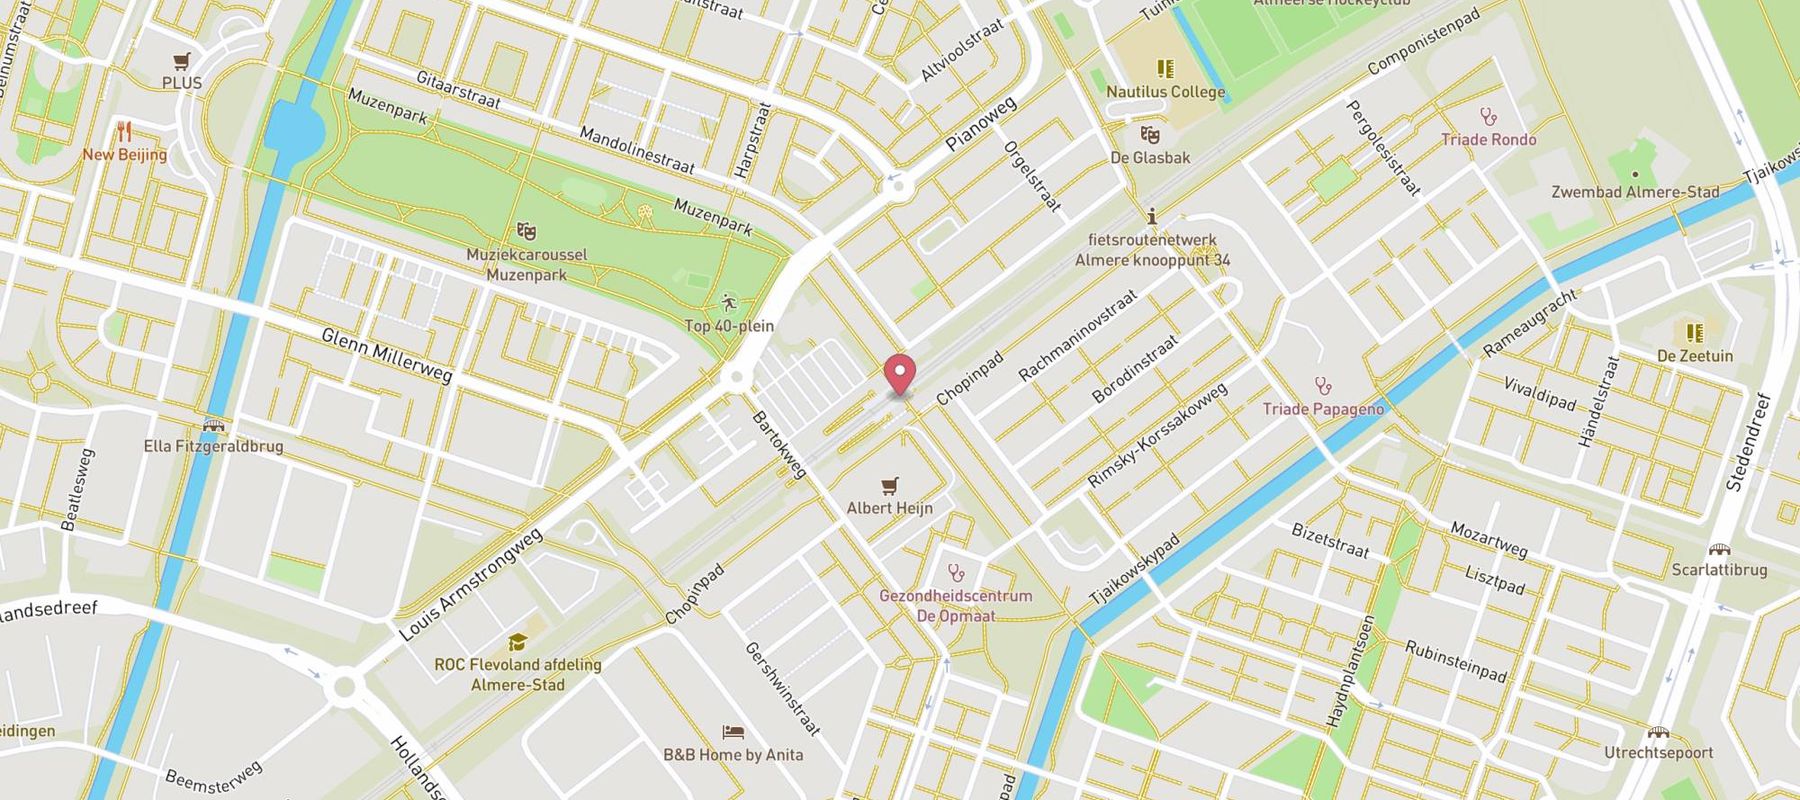 Muziekwijk map